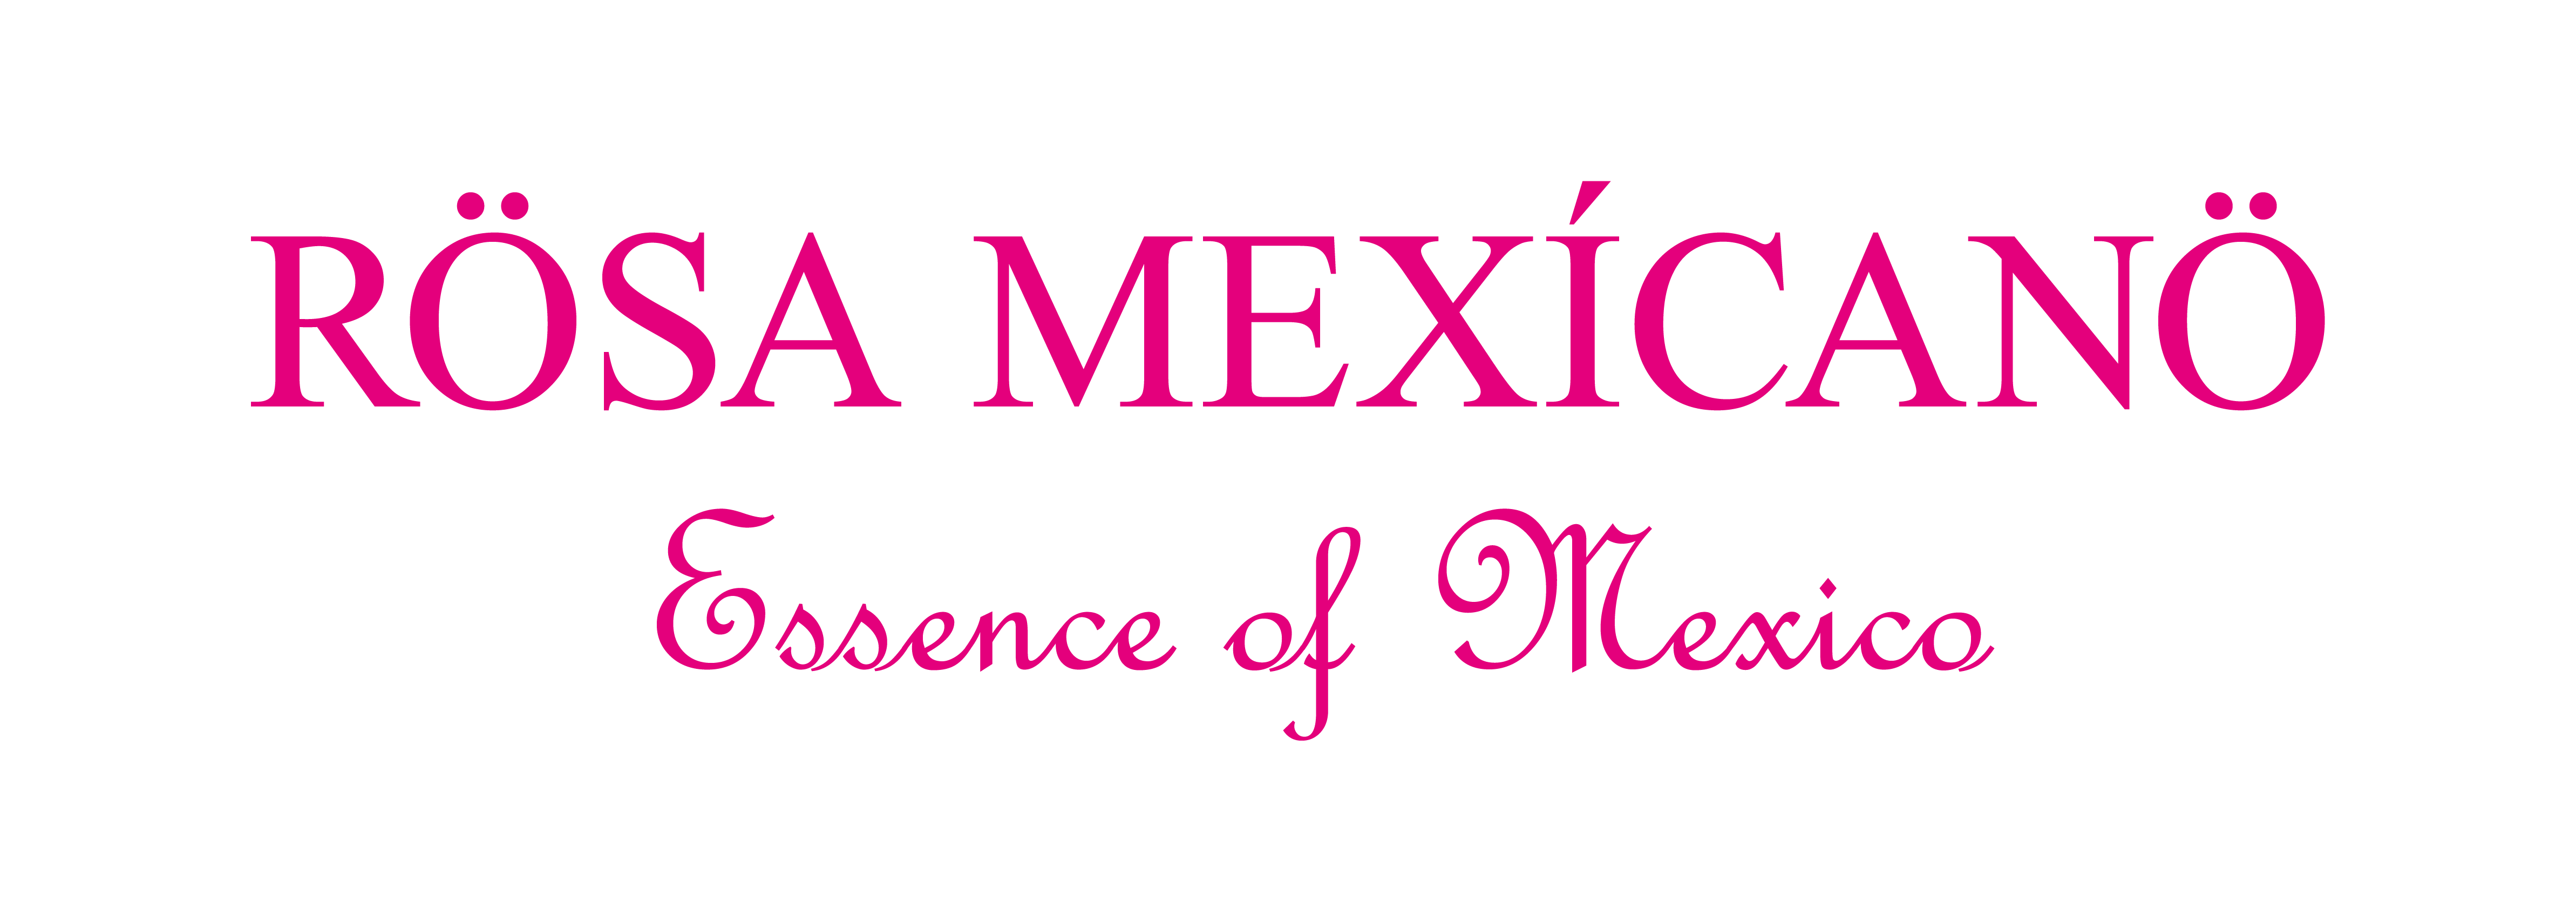 Rosa Mexicano_Chevron